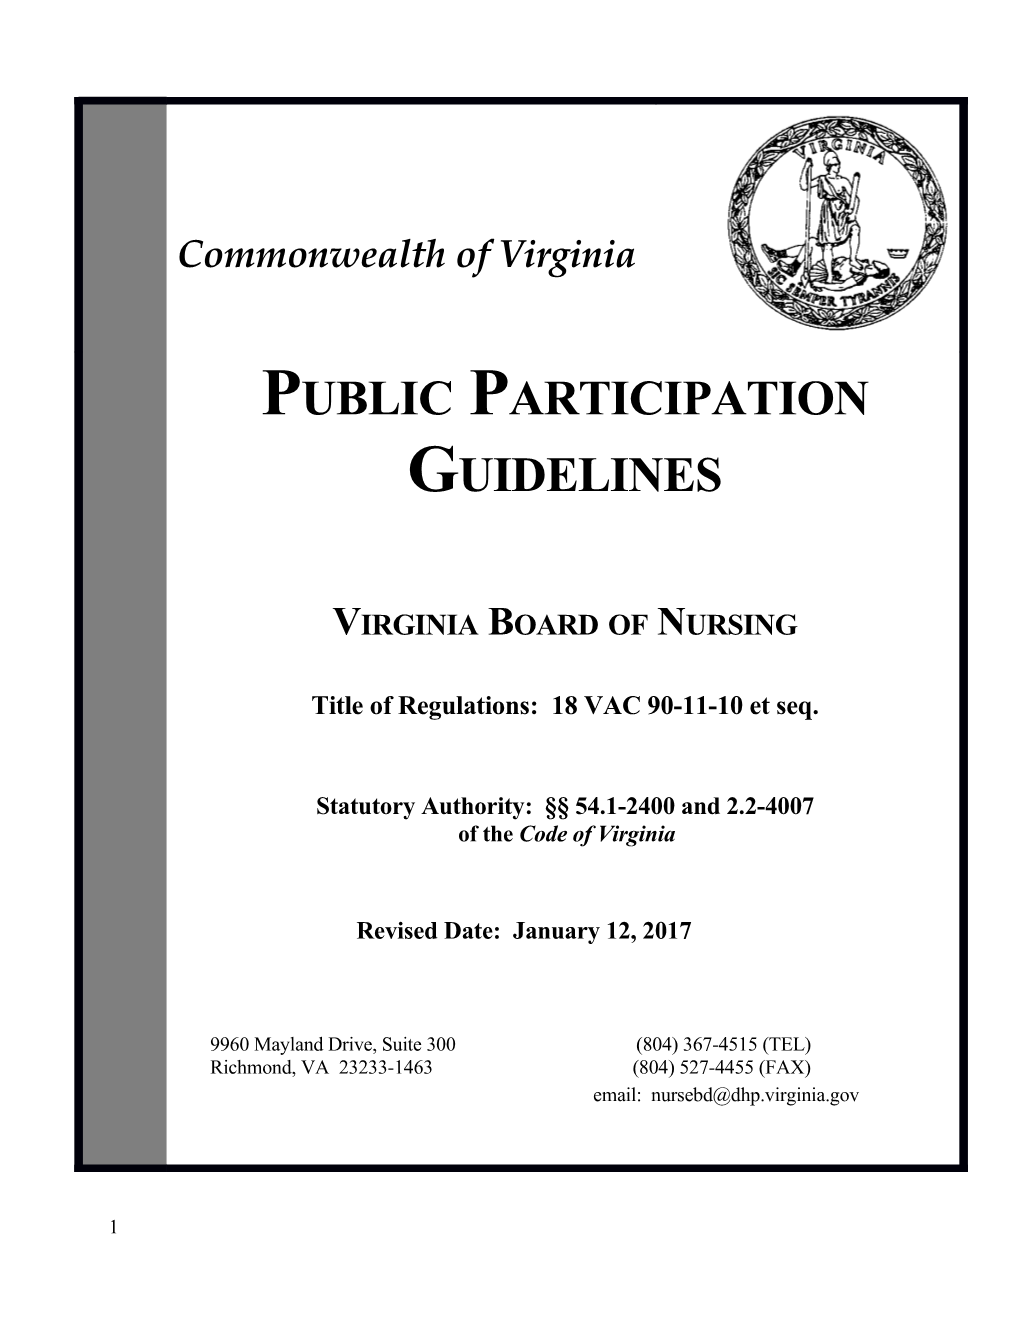 Nursing - Public Participation Guidelines